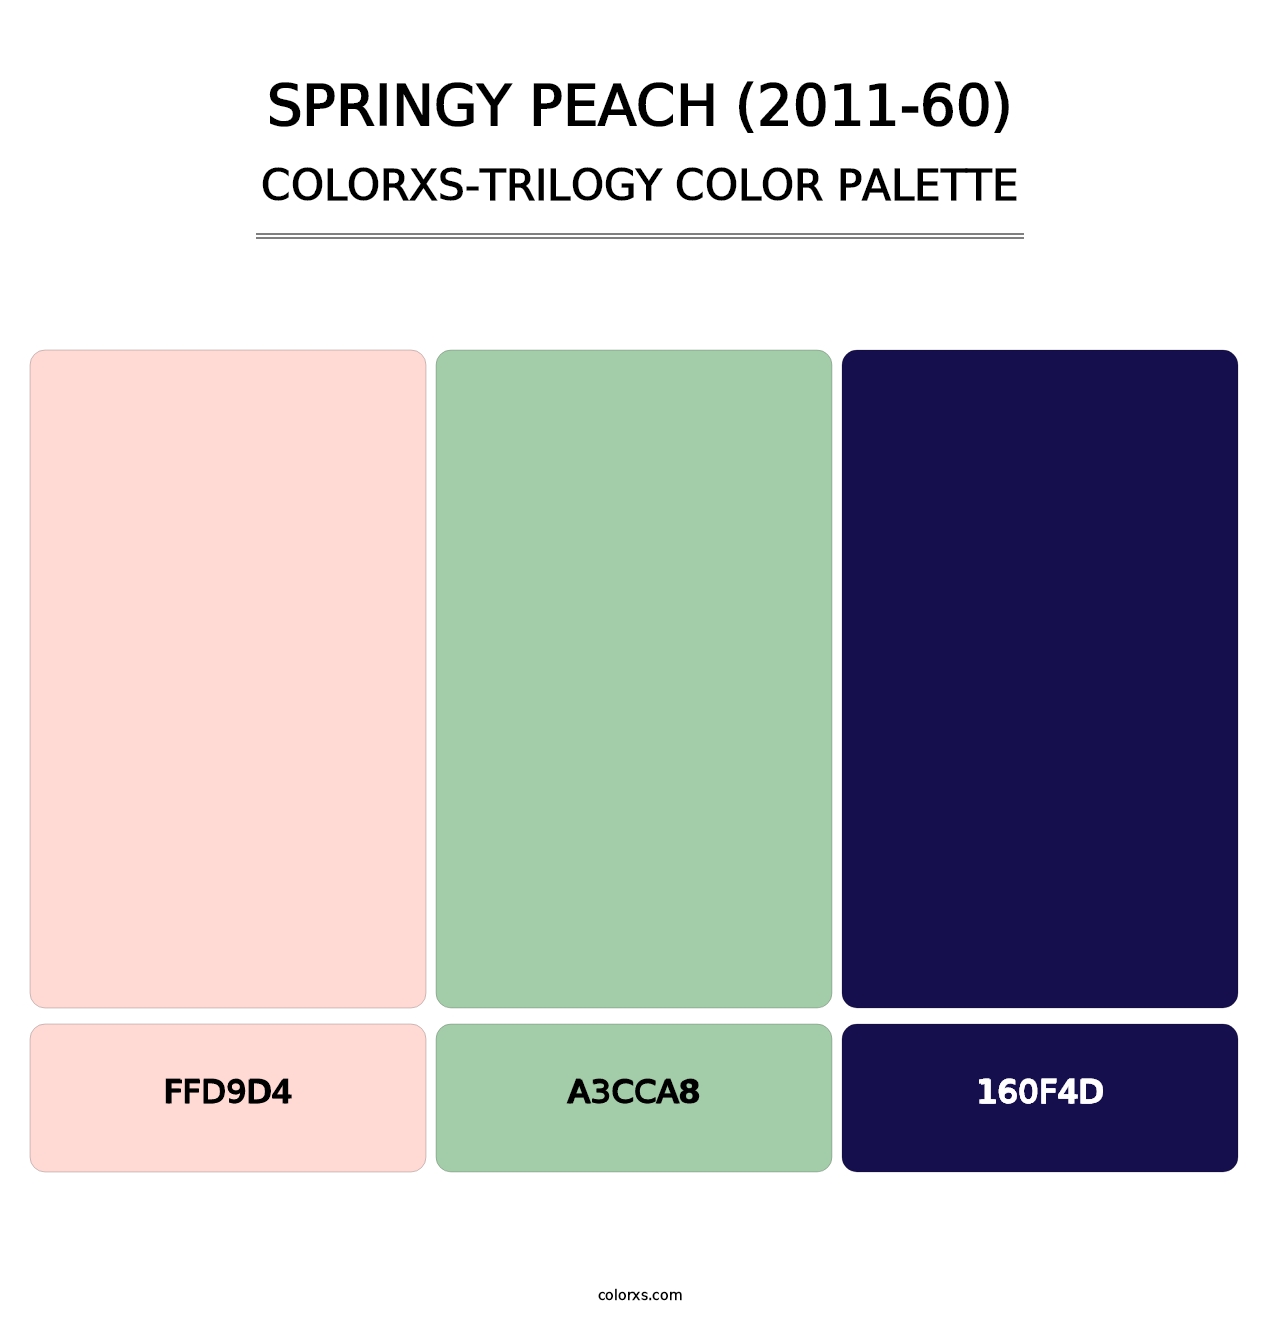 Springy Peach (2011-60) - Colorxs Trilogy Palette